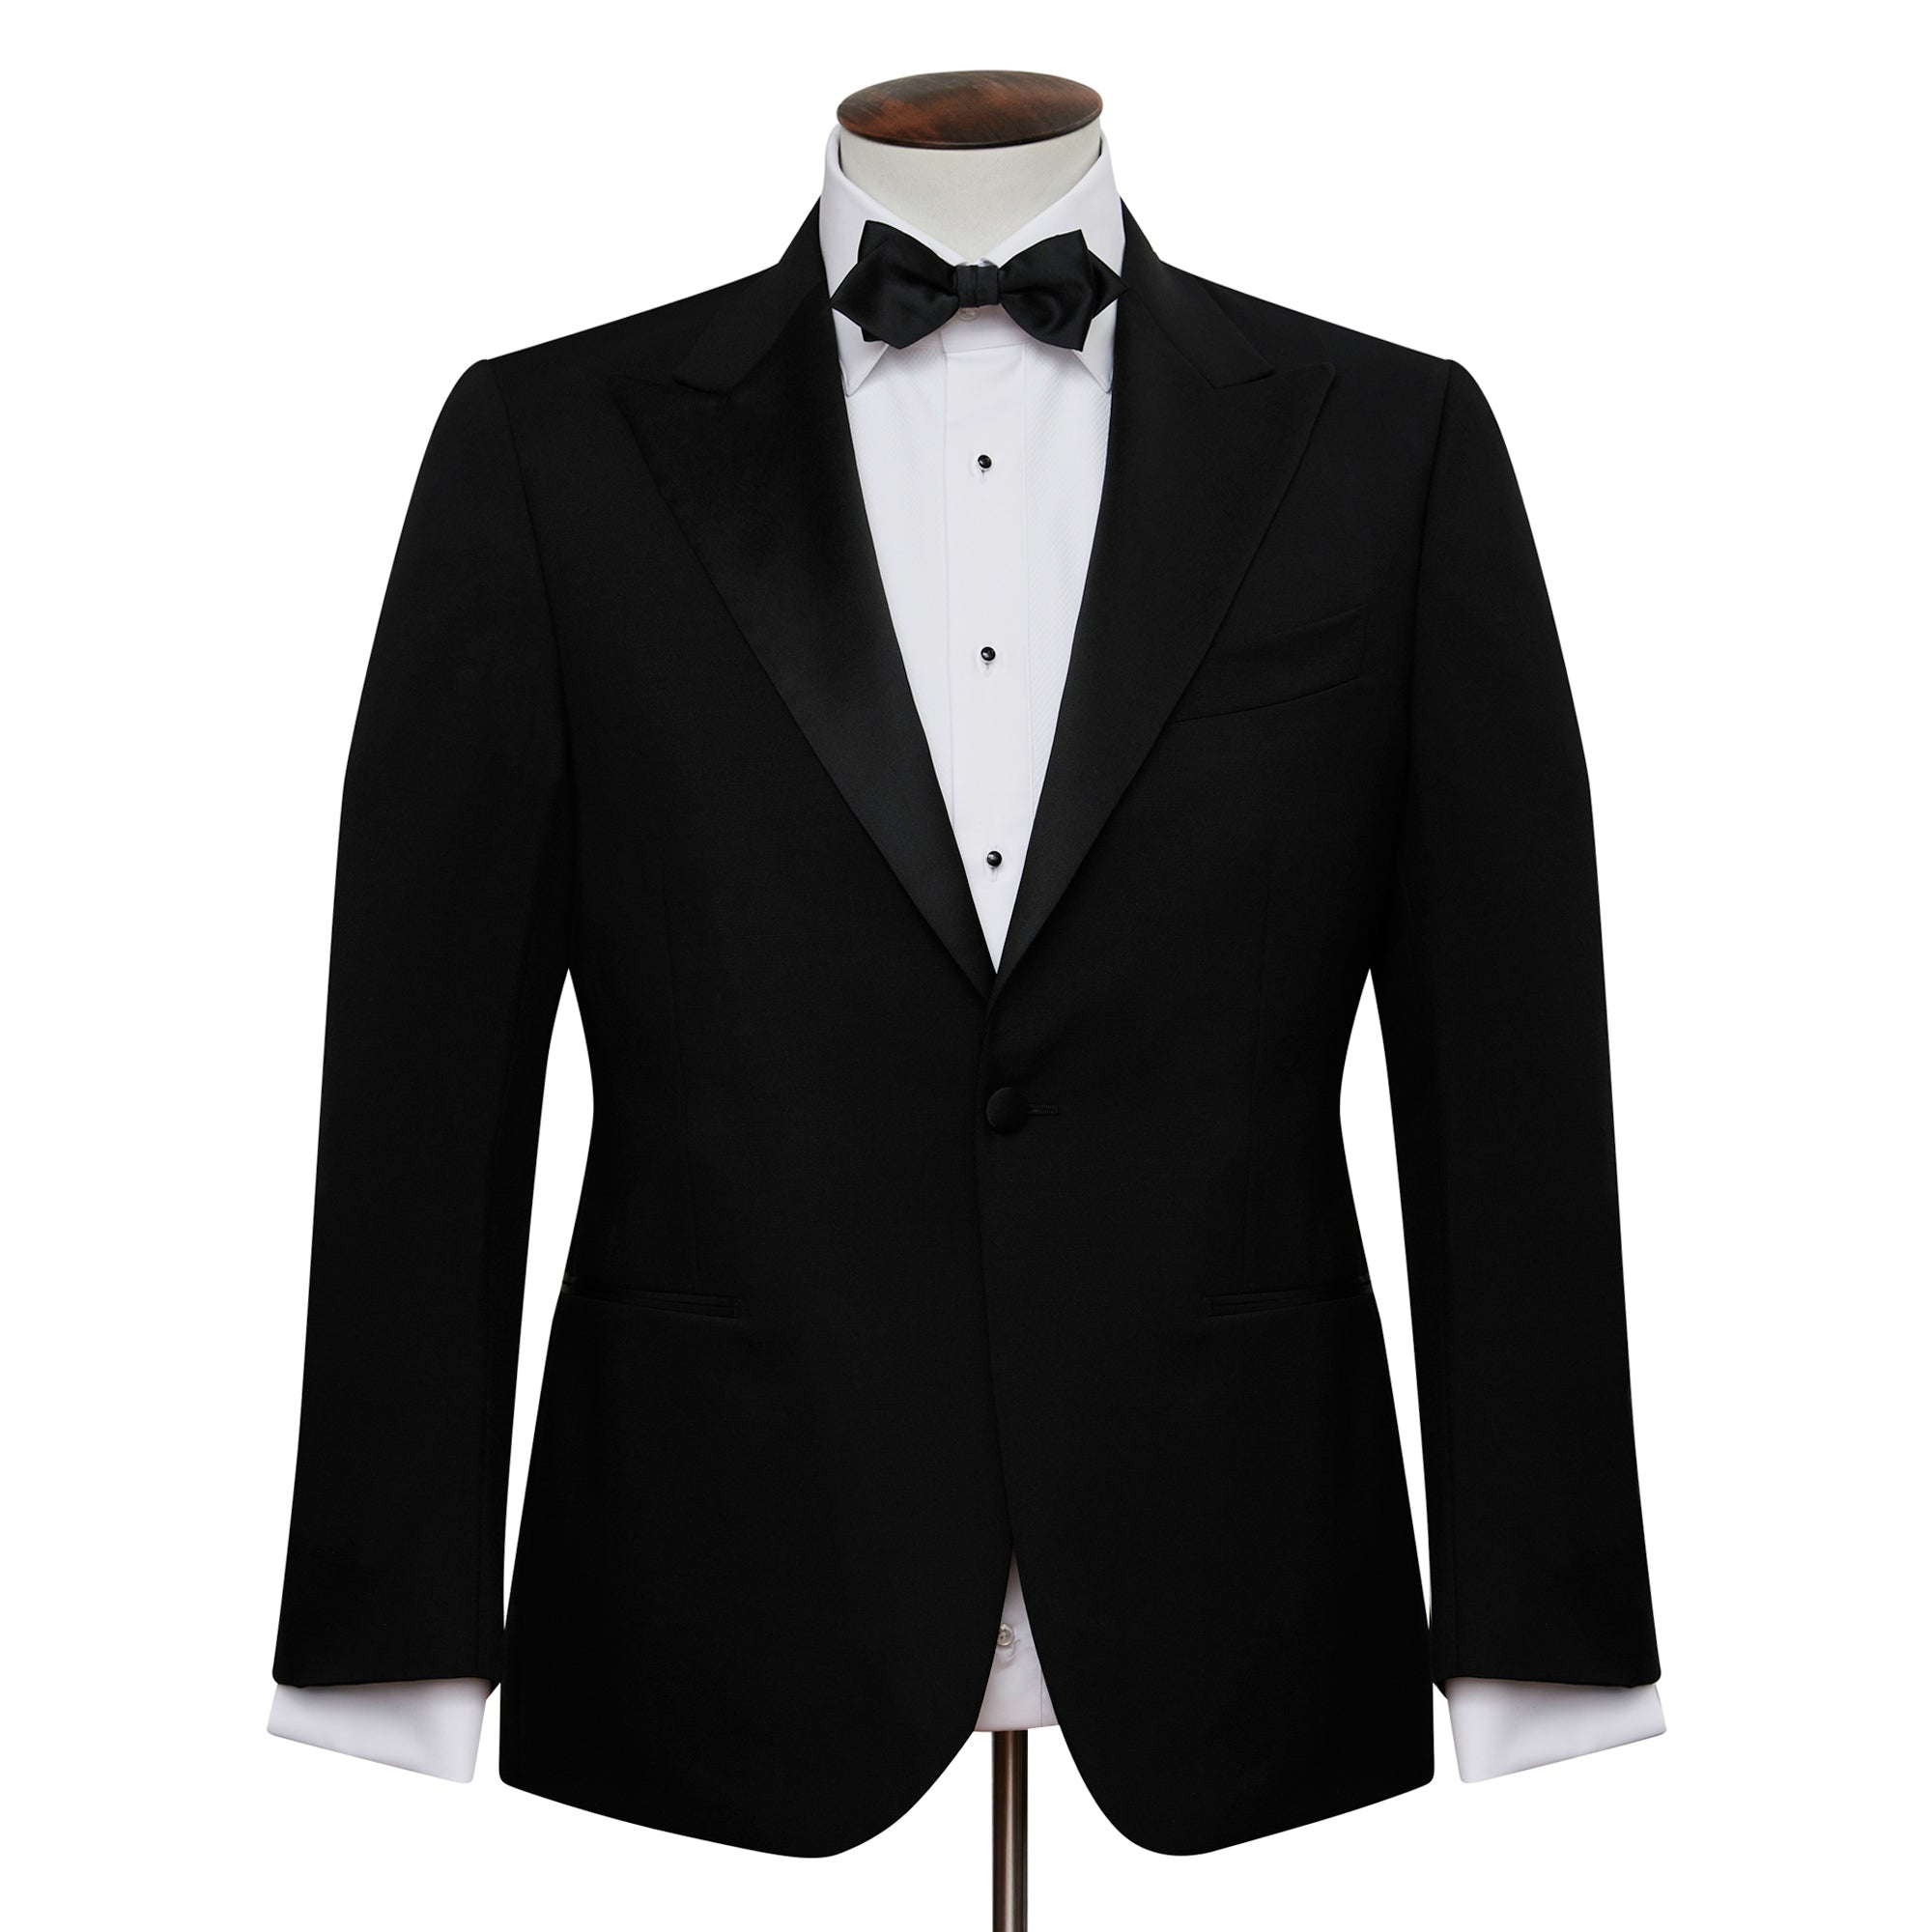 White Tuxedo Dinner Shirt with Black Stud Front